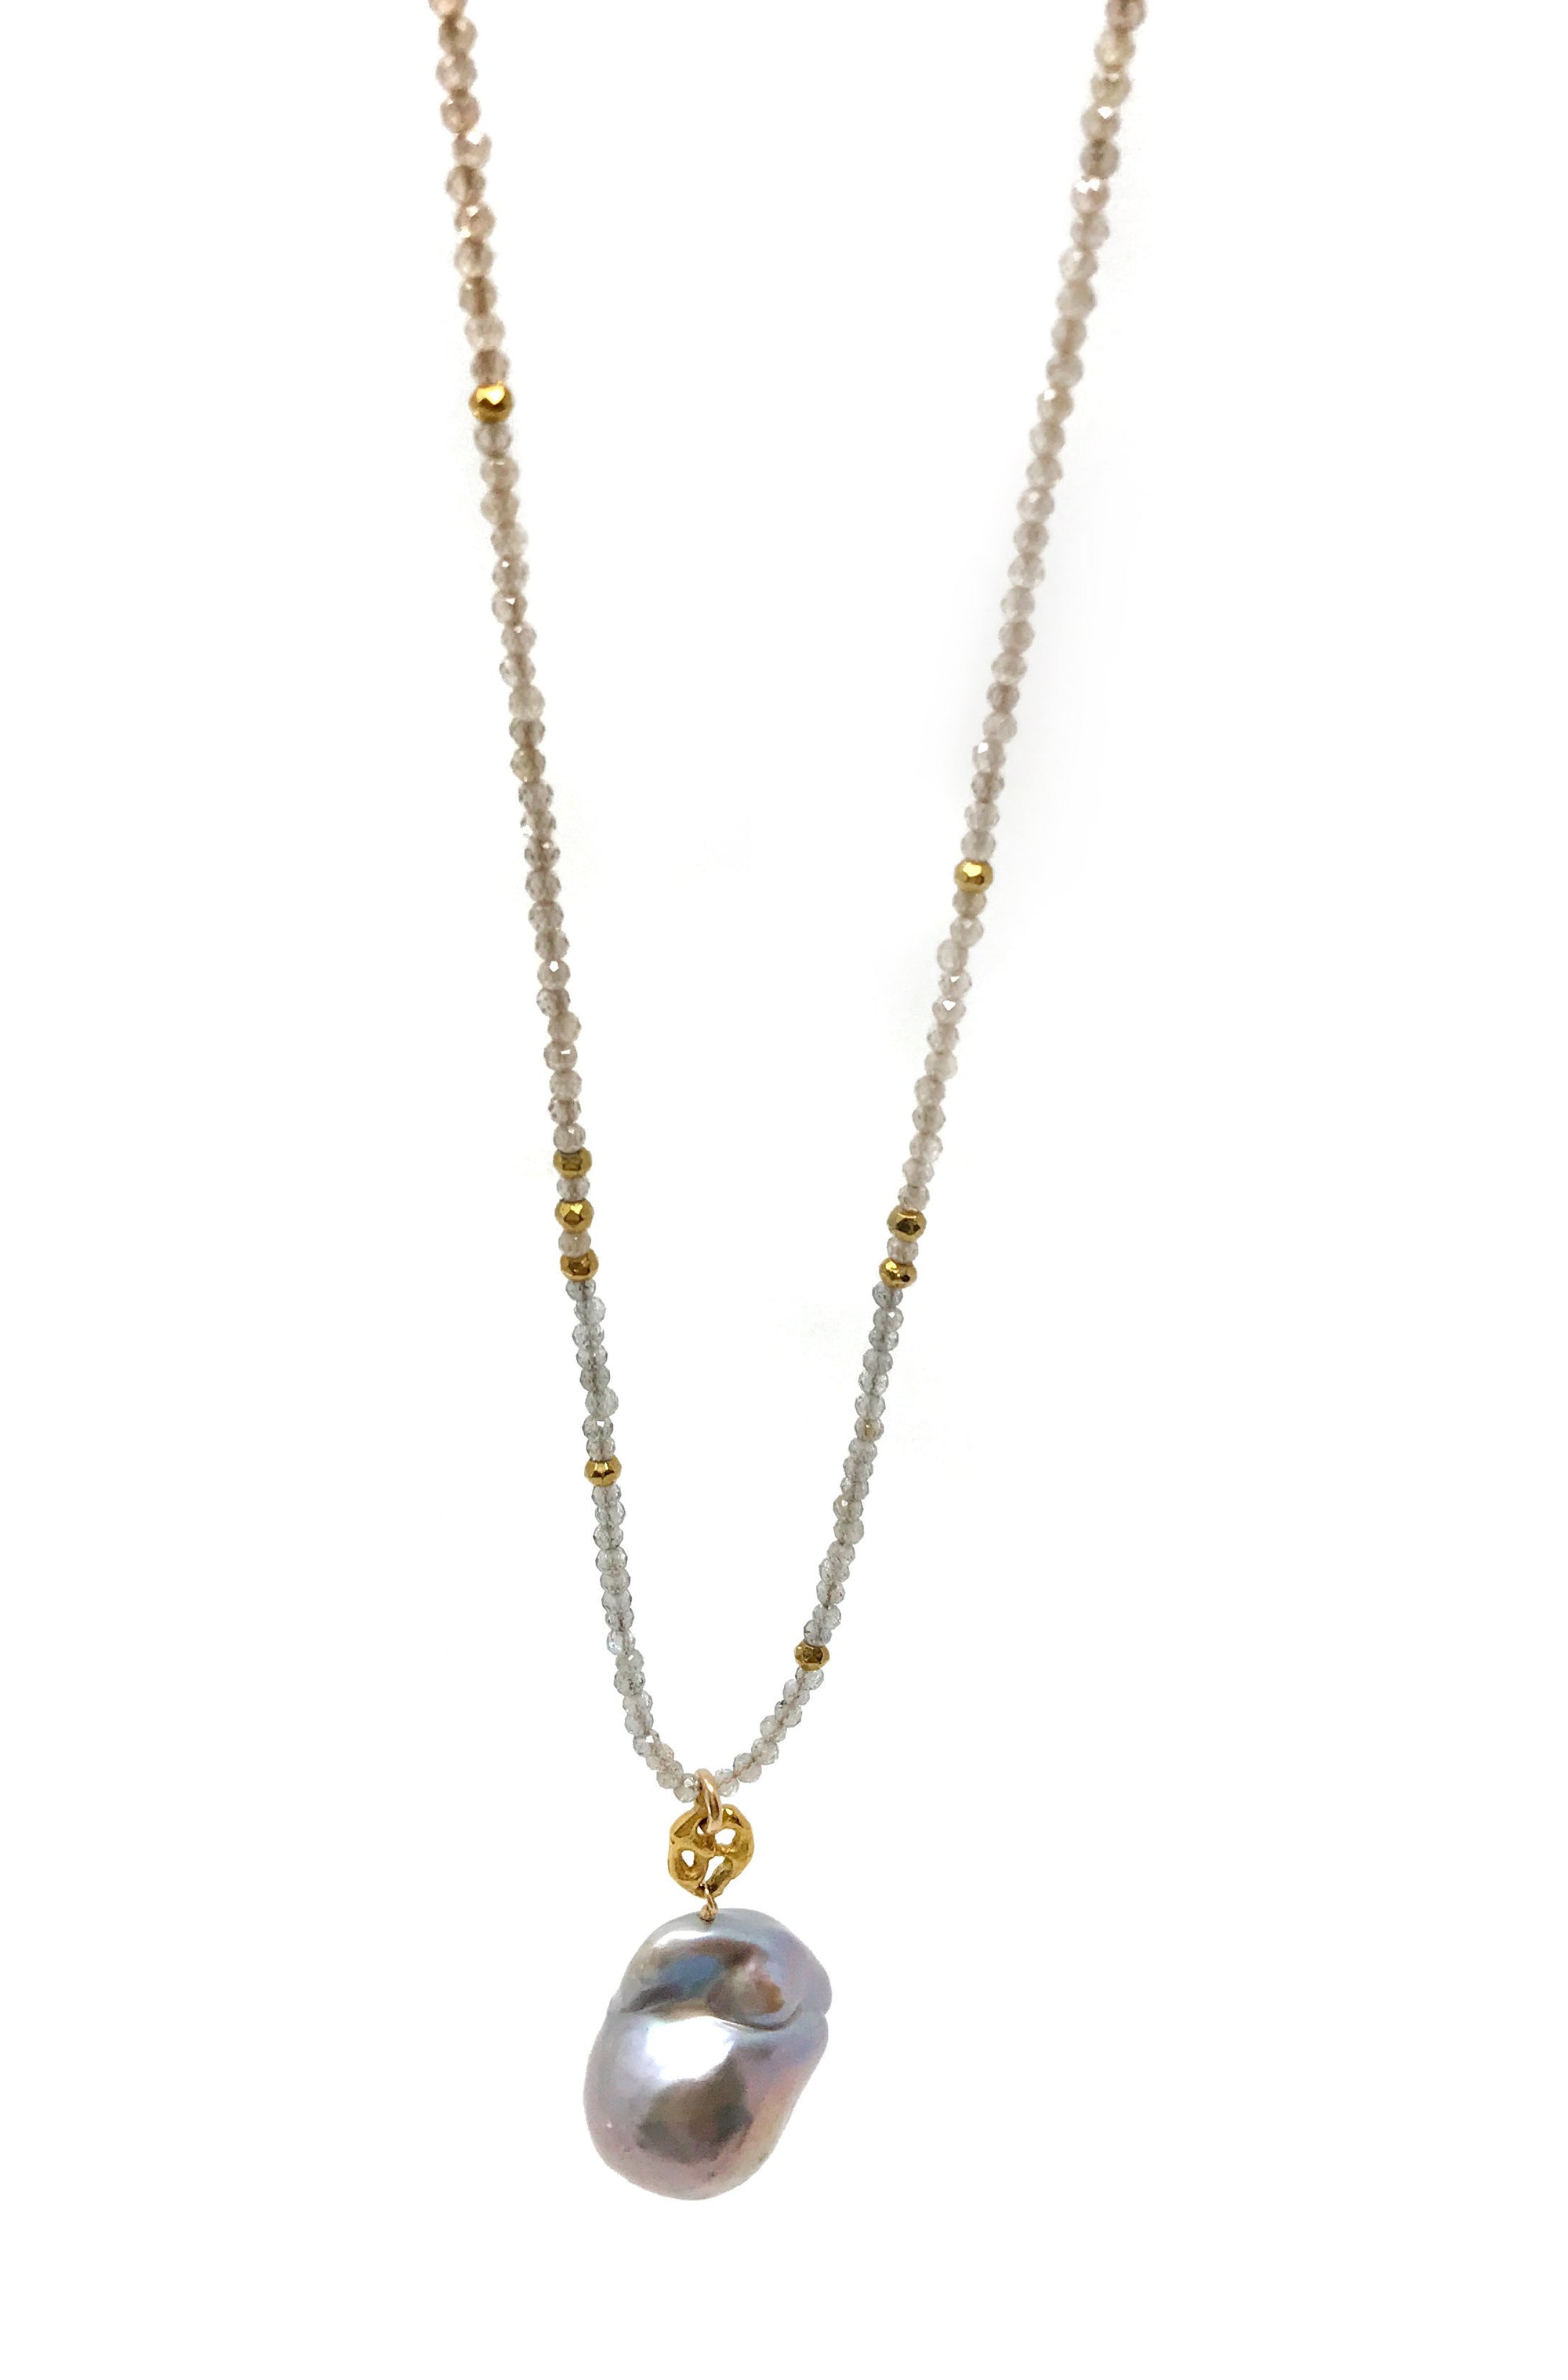 Labradorite, Zircon and Baroque Pearl Necklace